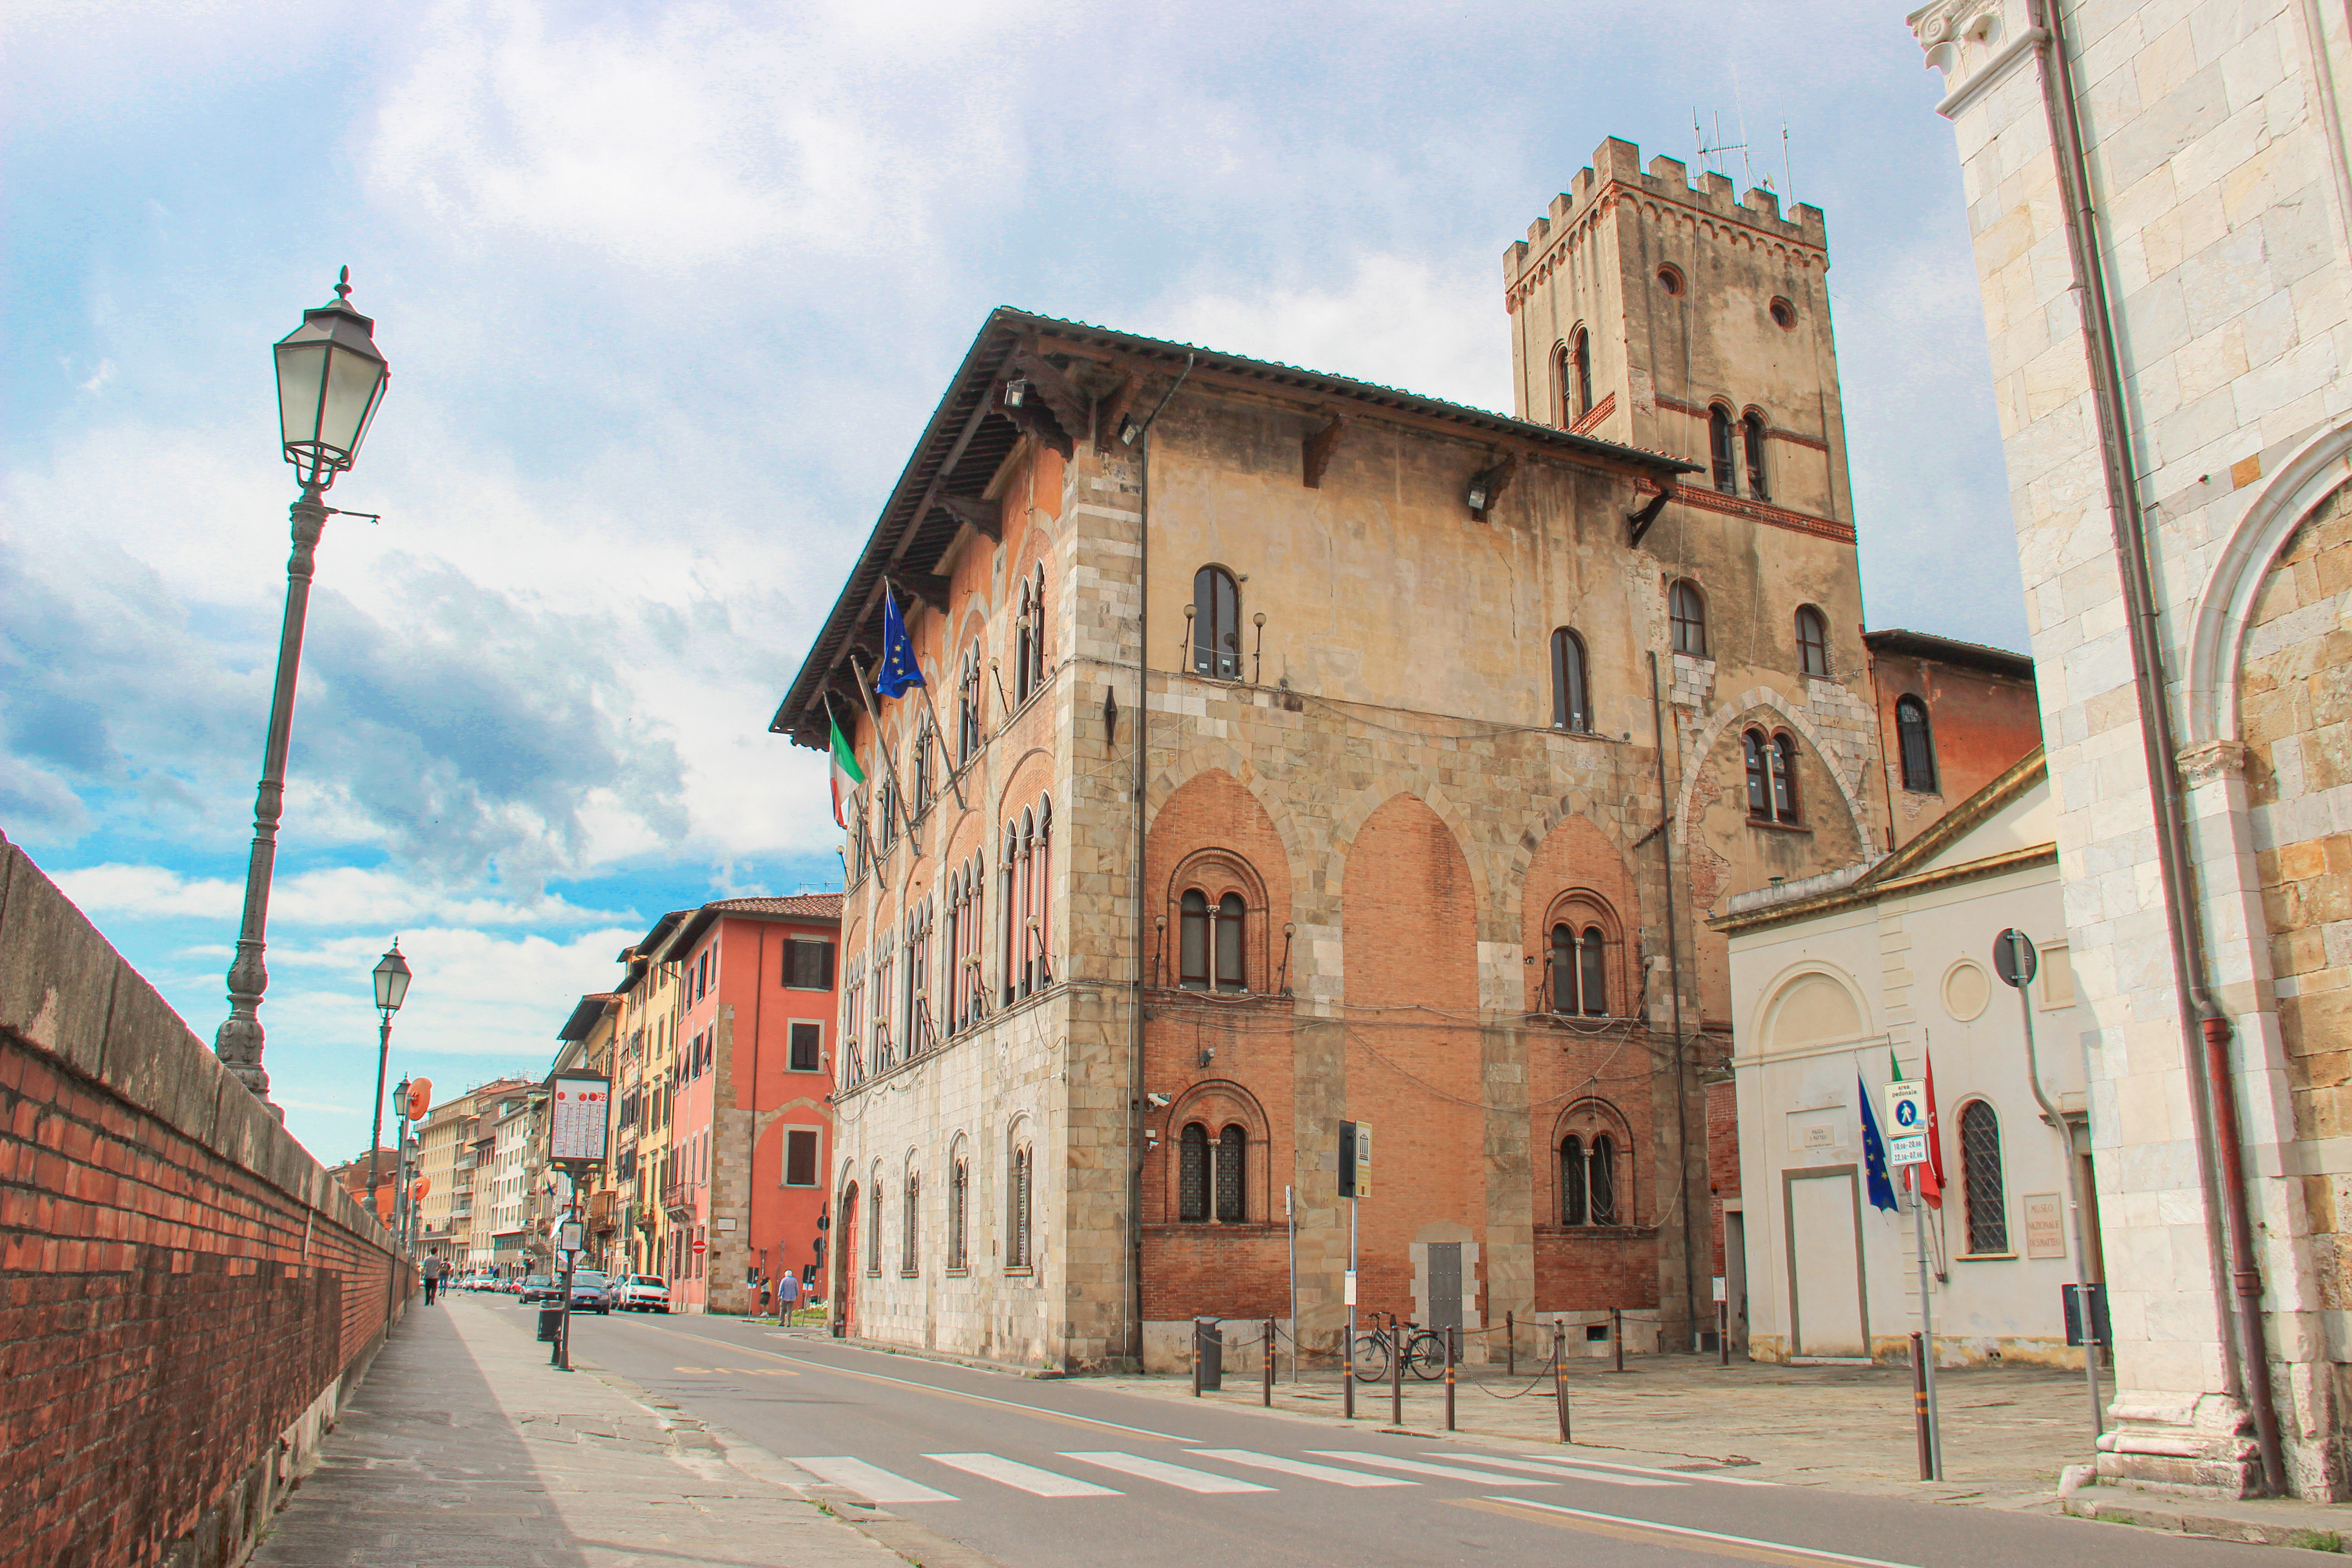 Ristrutturazione neo gotica - Palazzo Vecchio de’ Medici, Prefettura (G. Bettini, Comune di Pisa)